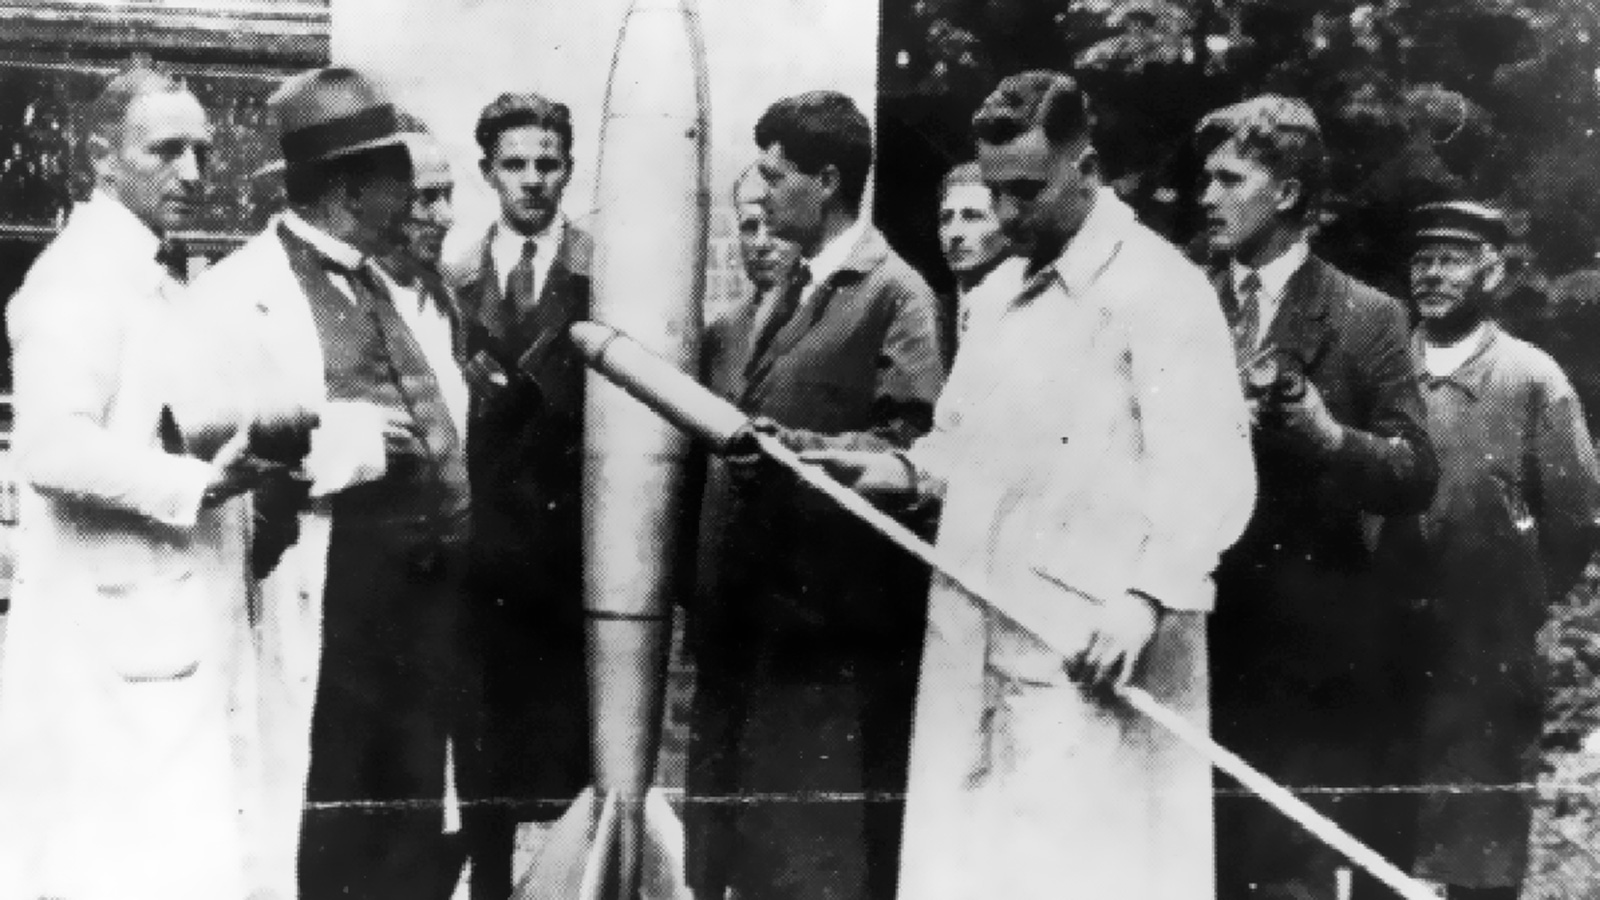 ‪العالم الألماني فون براون (الثاني من اليمين) مؤسس مشروع الصواريخ الأميركي الذي أتاح الوصول للقمر وسط فريق علماء الصواريخ بألمانيا 1930 (وكالة ناسا)‬ العالم الألماني فون براون (الثاني من اليمين) مؤسس مشروع الصواريخ الأميركي الذي أتاح الوصول للقمر وسط فريق علماء الصواريخ بألمانيا 1930 (وكالة ناسا)